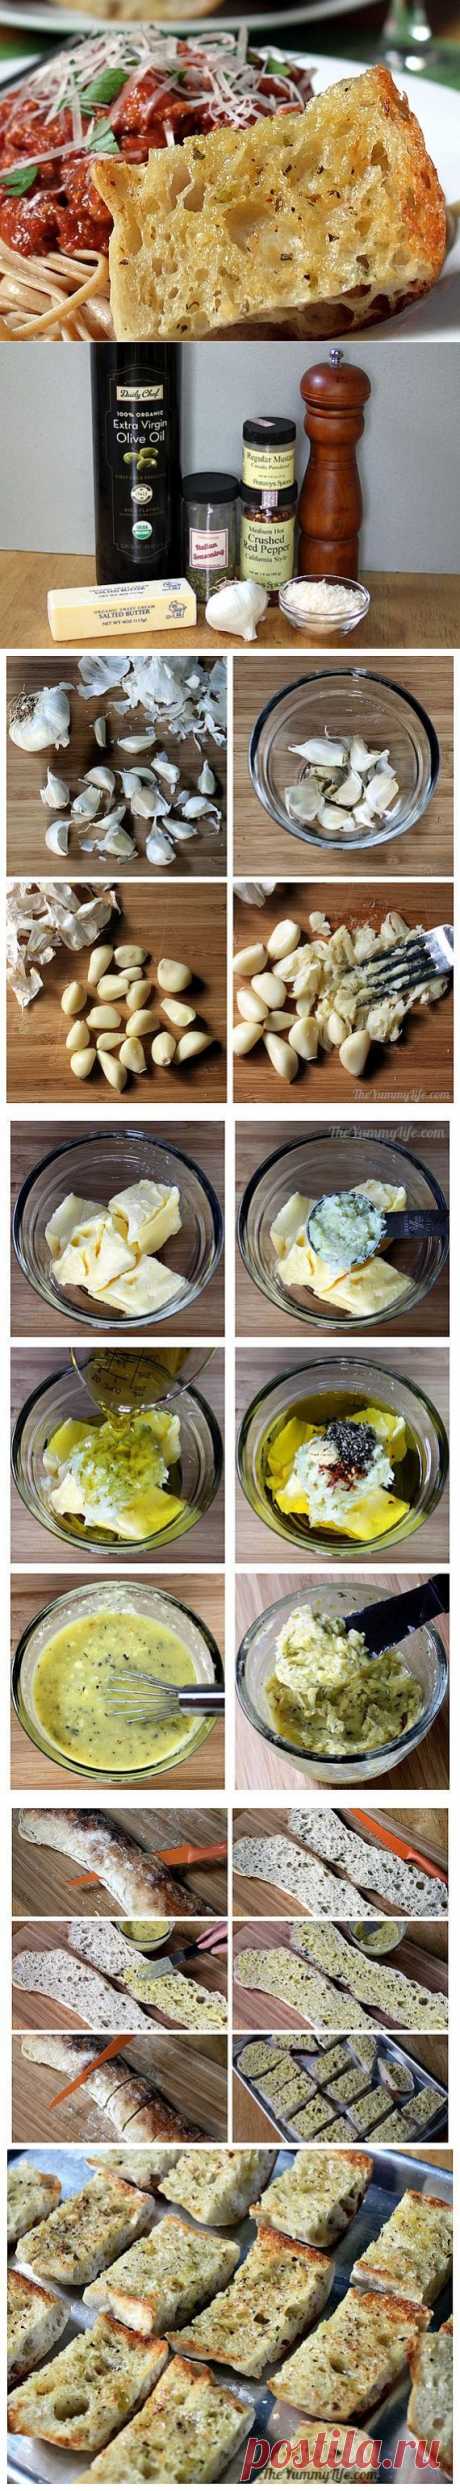 Как приготовить настоящие итальянские гренки с чесноком? — Вкусные рецепты